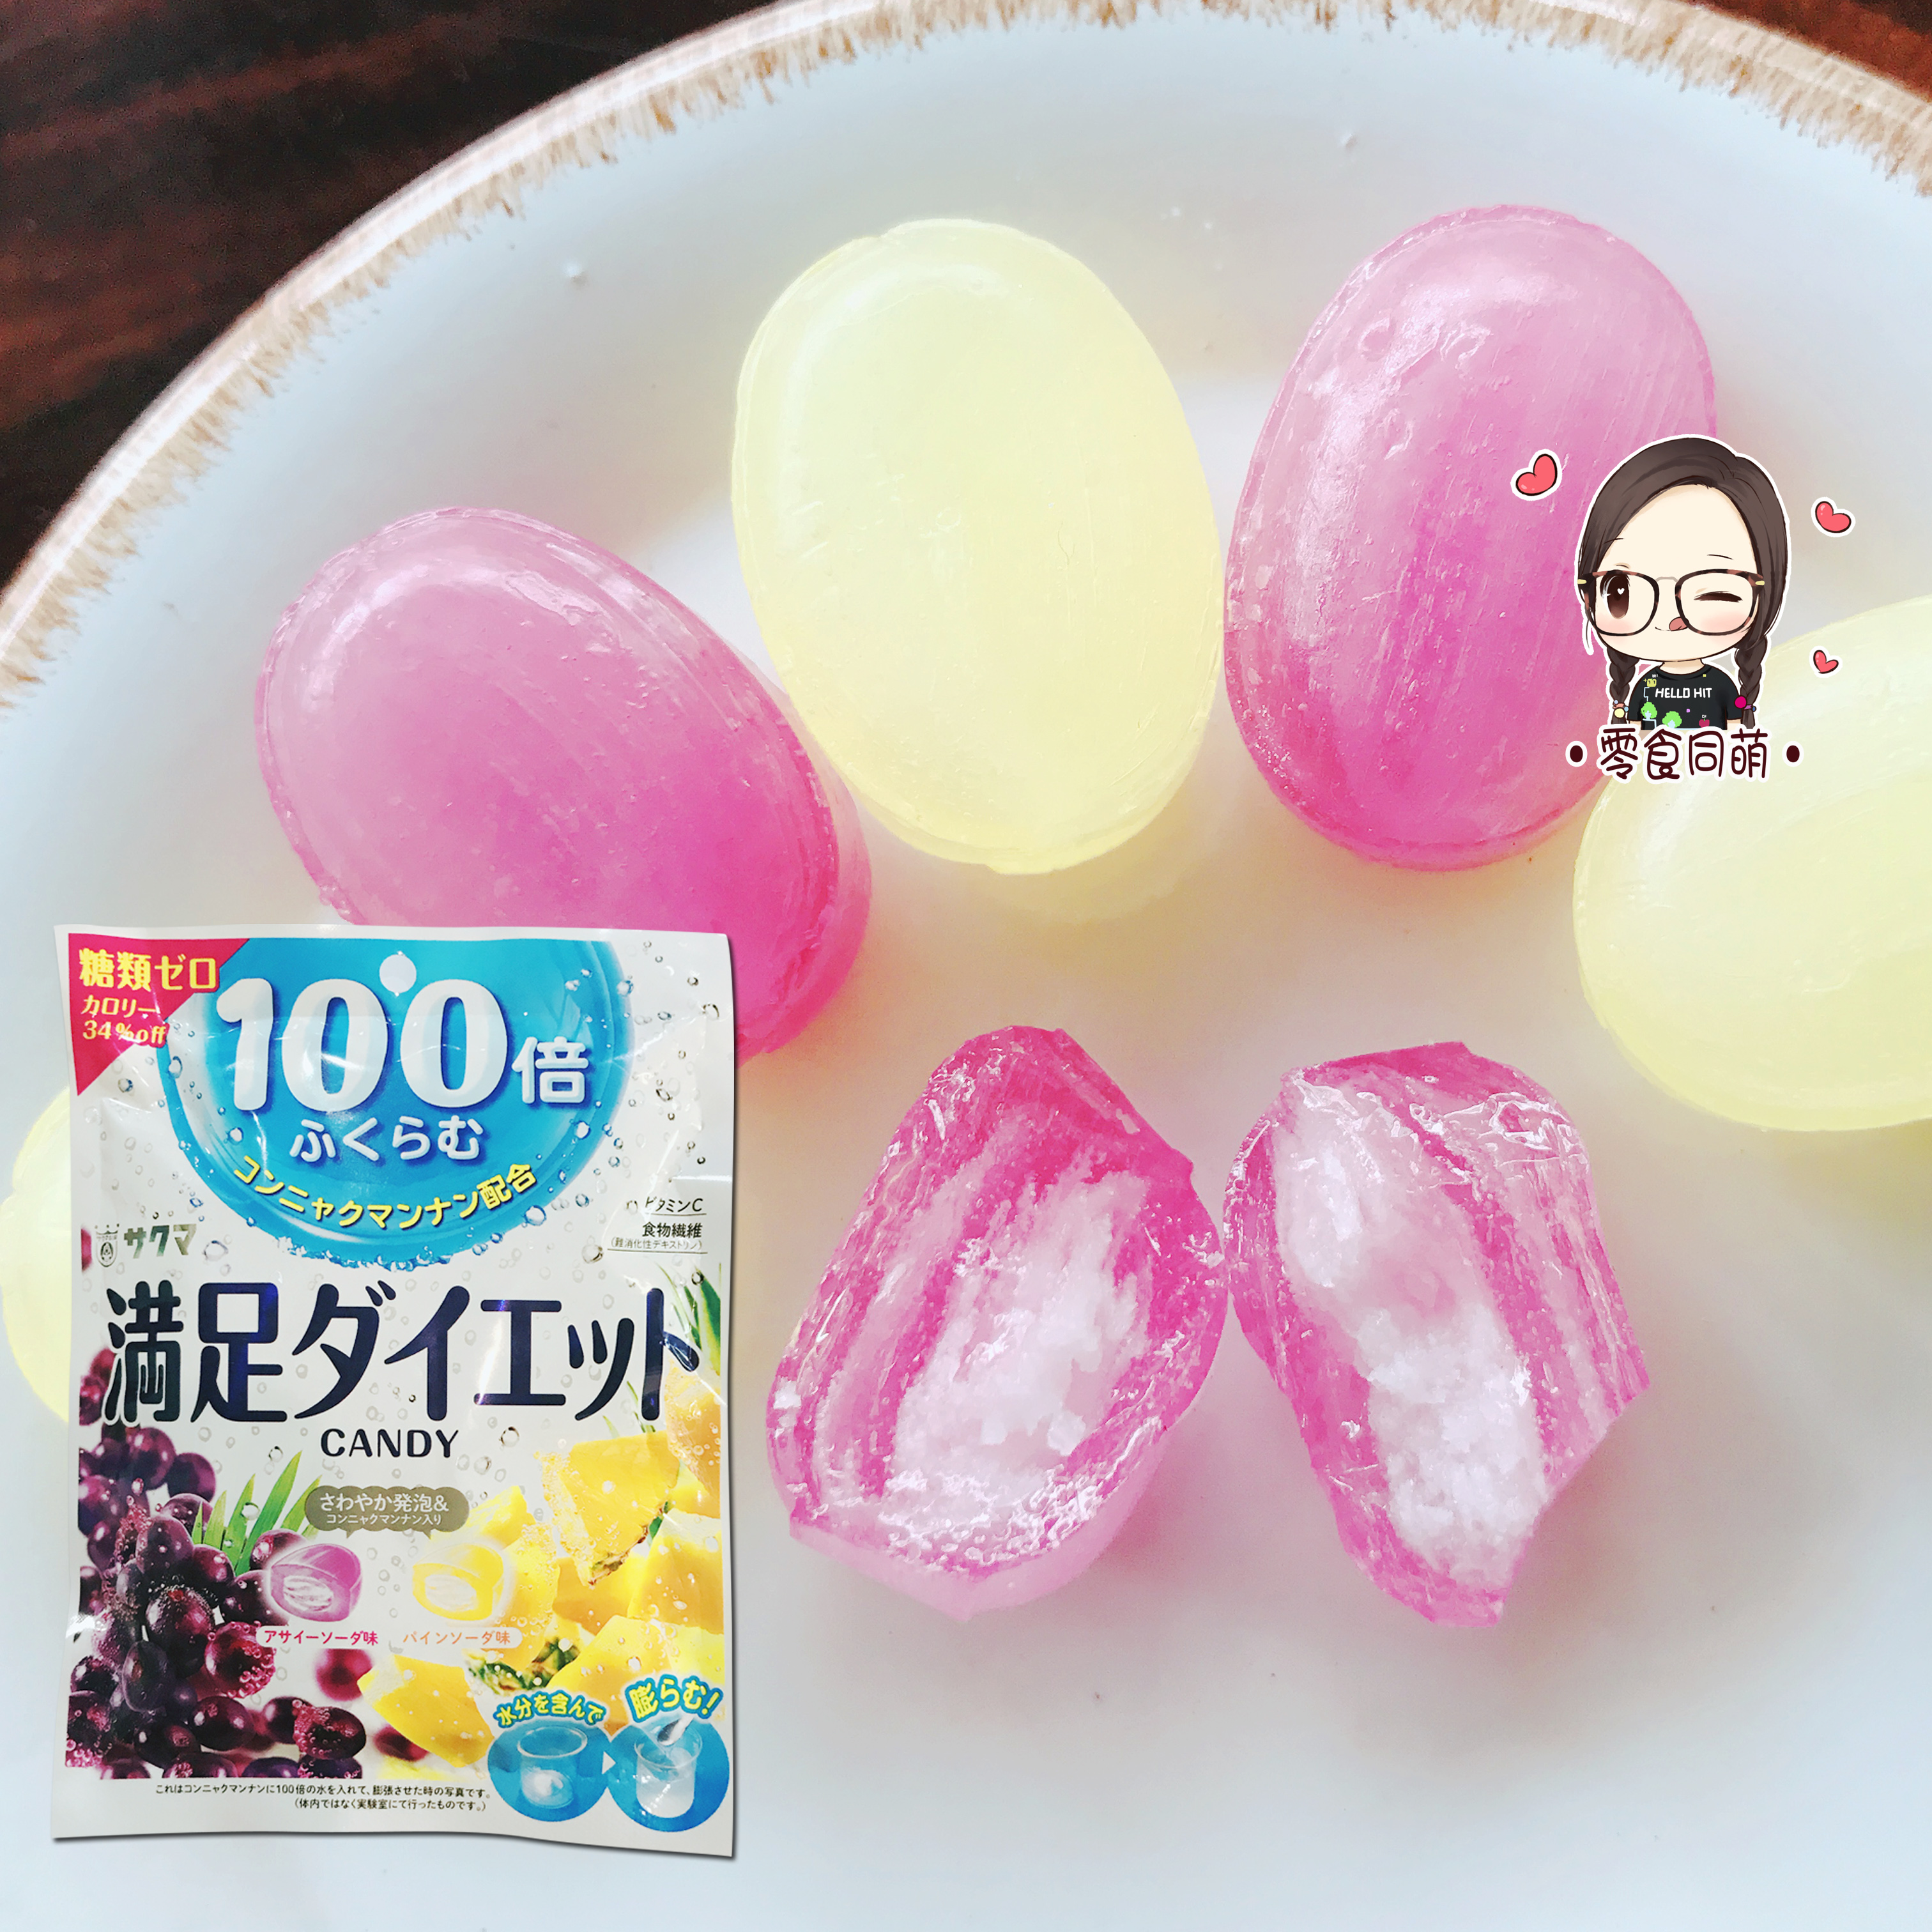 【零食同萌】现货 日本sakuma佐久间满足100倍饱腹糖菠萝黑加仑味